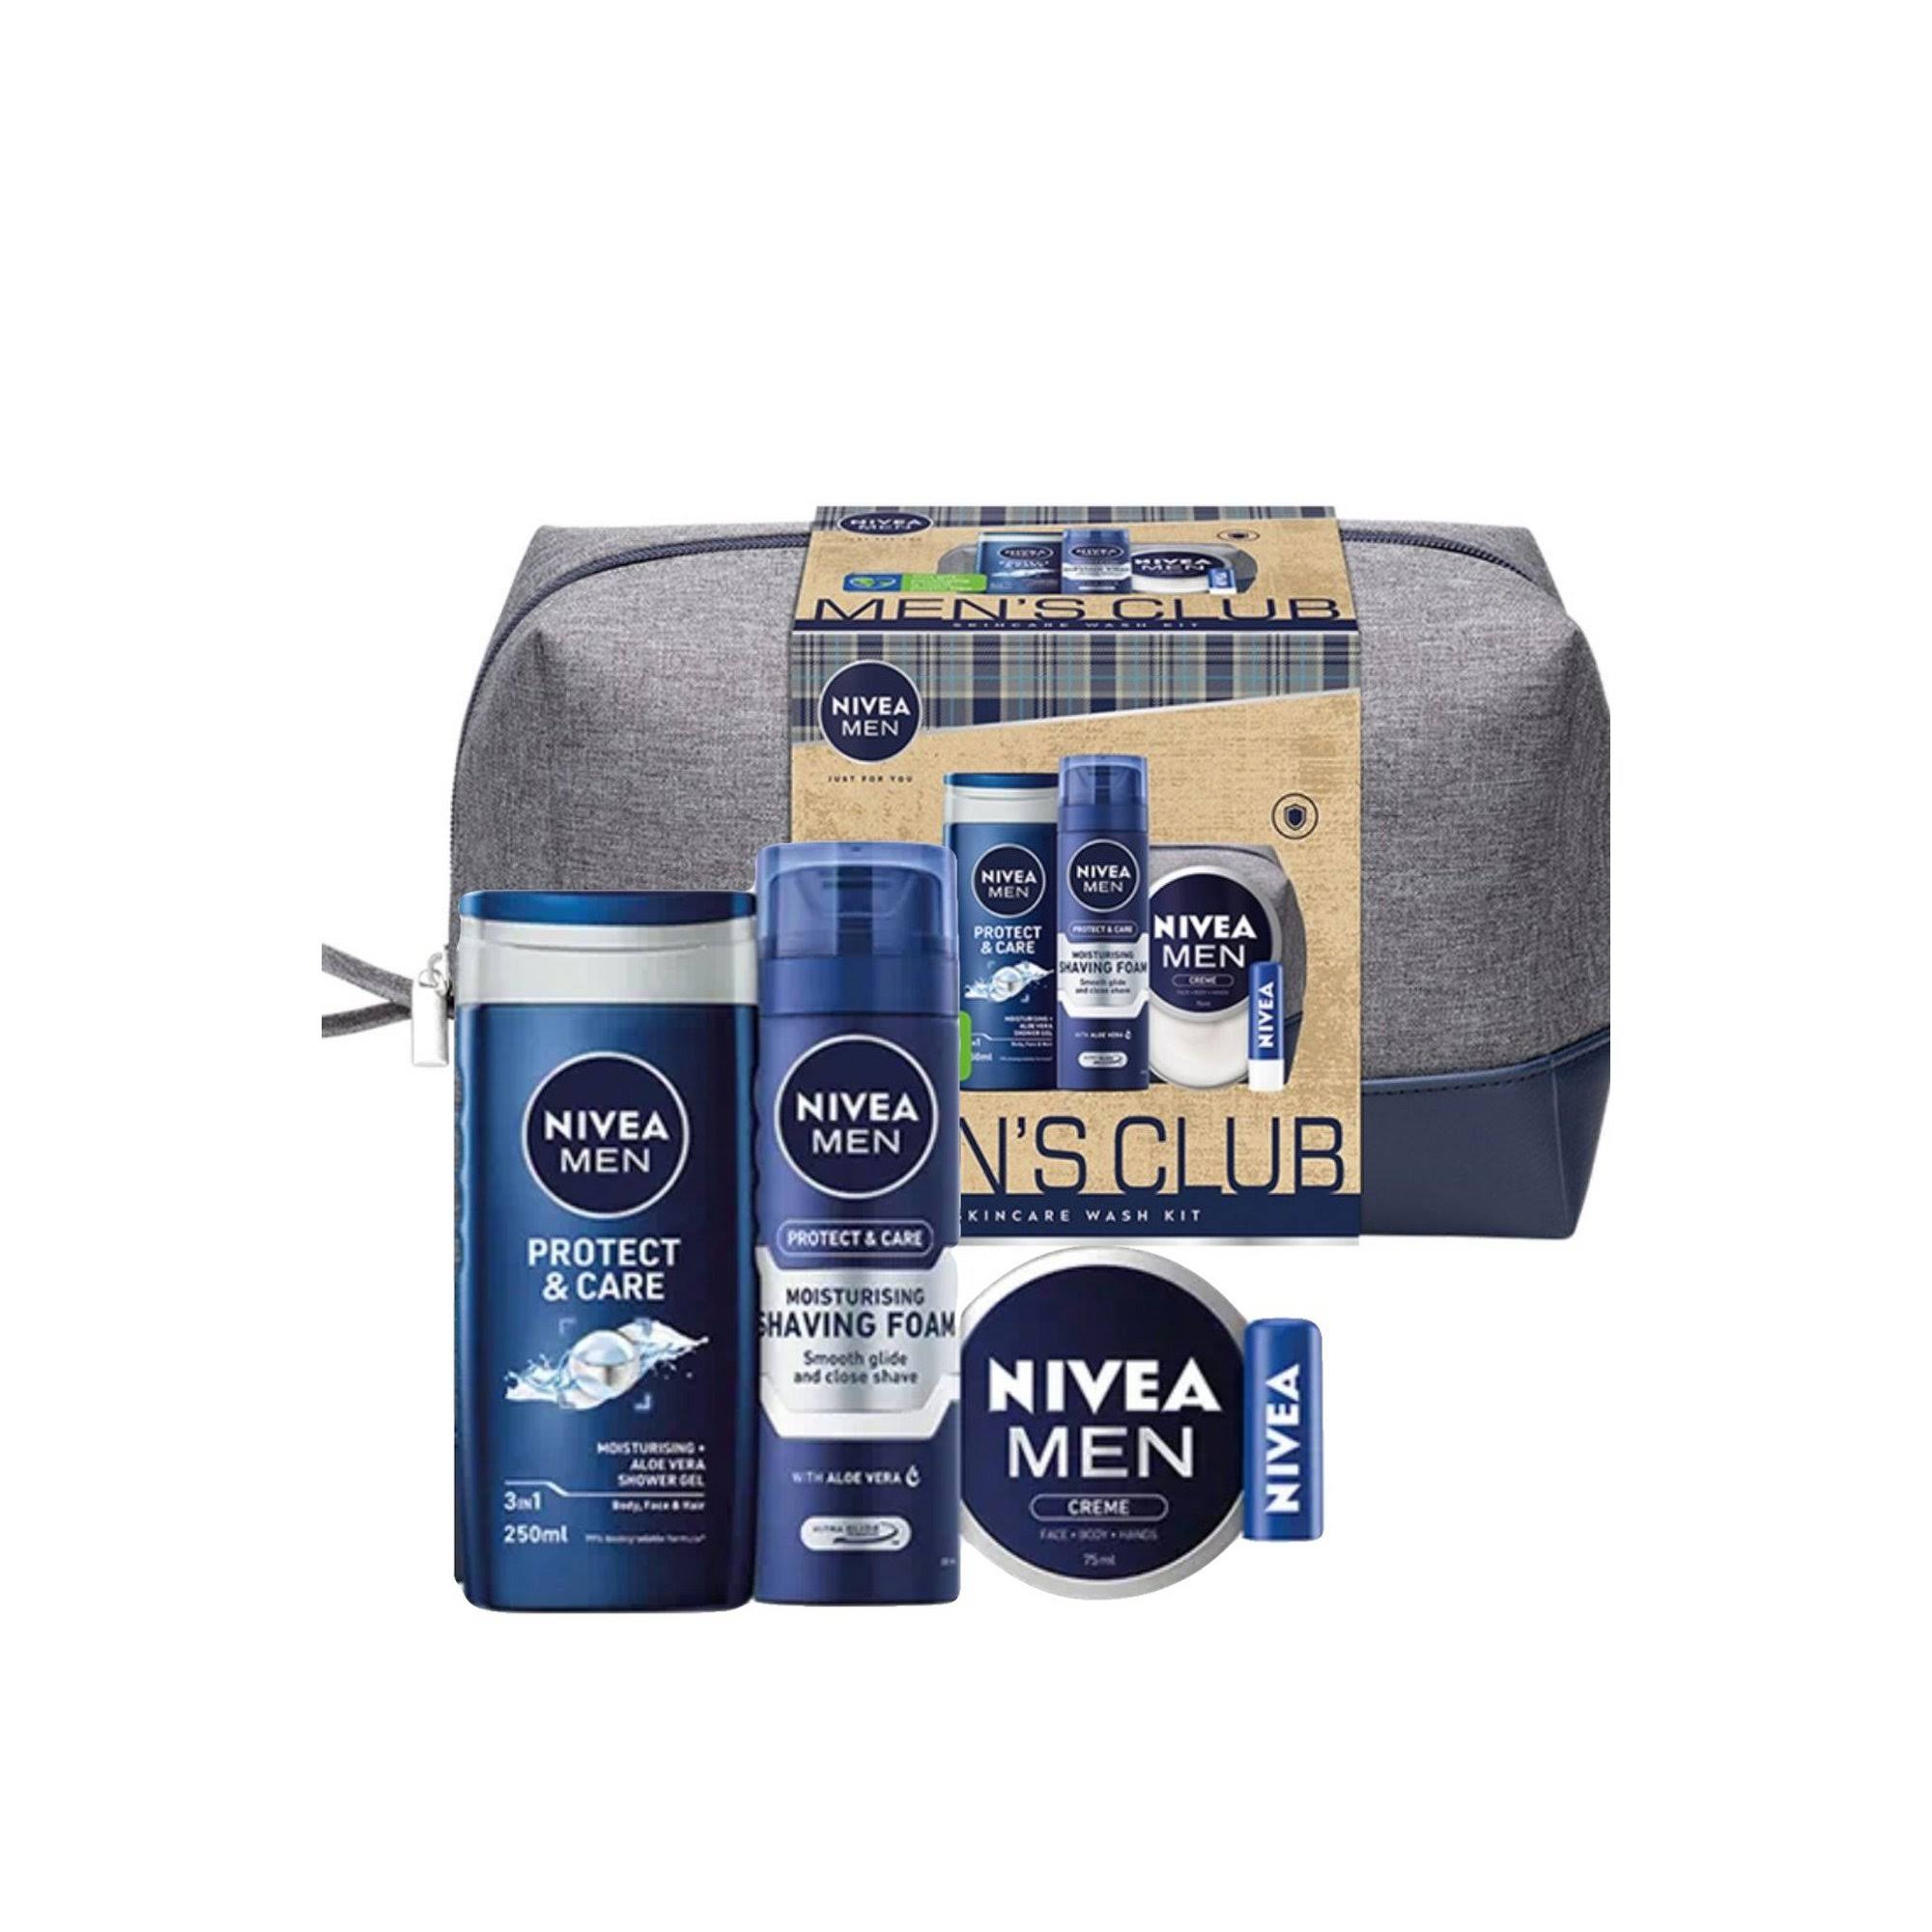 Nivea GSTONIV119 for Men Skincare Wash Kit Gift Set